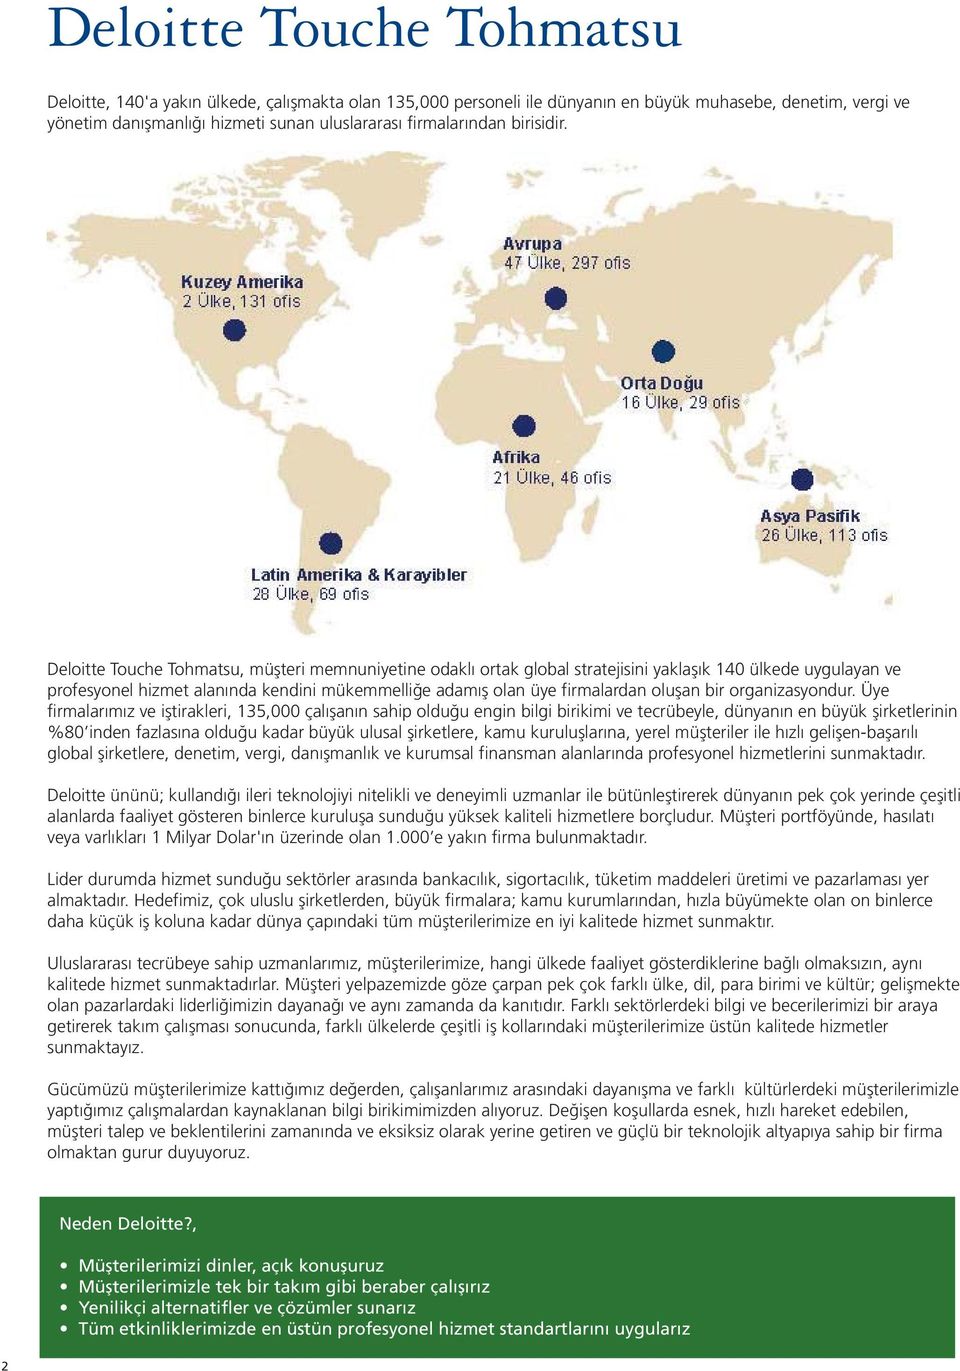 Deloitte Touche Tohmatsu, müşteri memnuniyetine odaklı ortak global stratejisini yaklaşık 140 ülkede uygulayan ve profesyonel hizmet alanında kendini mükemmelliğe adamış olan üye firmalardan oluşan